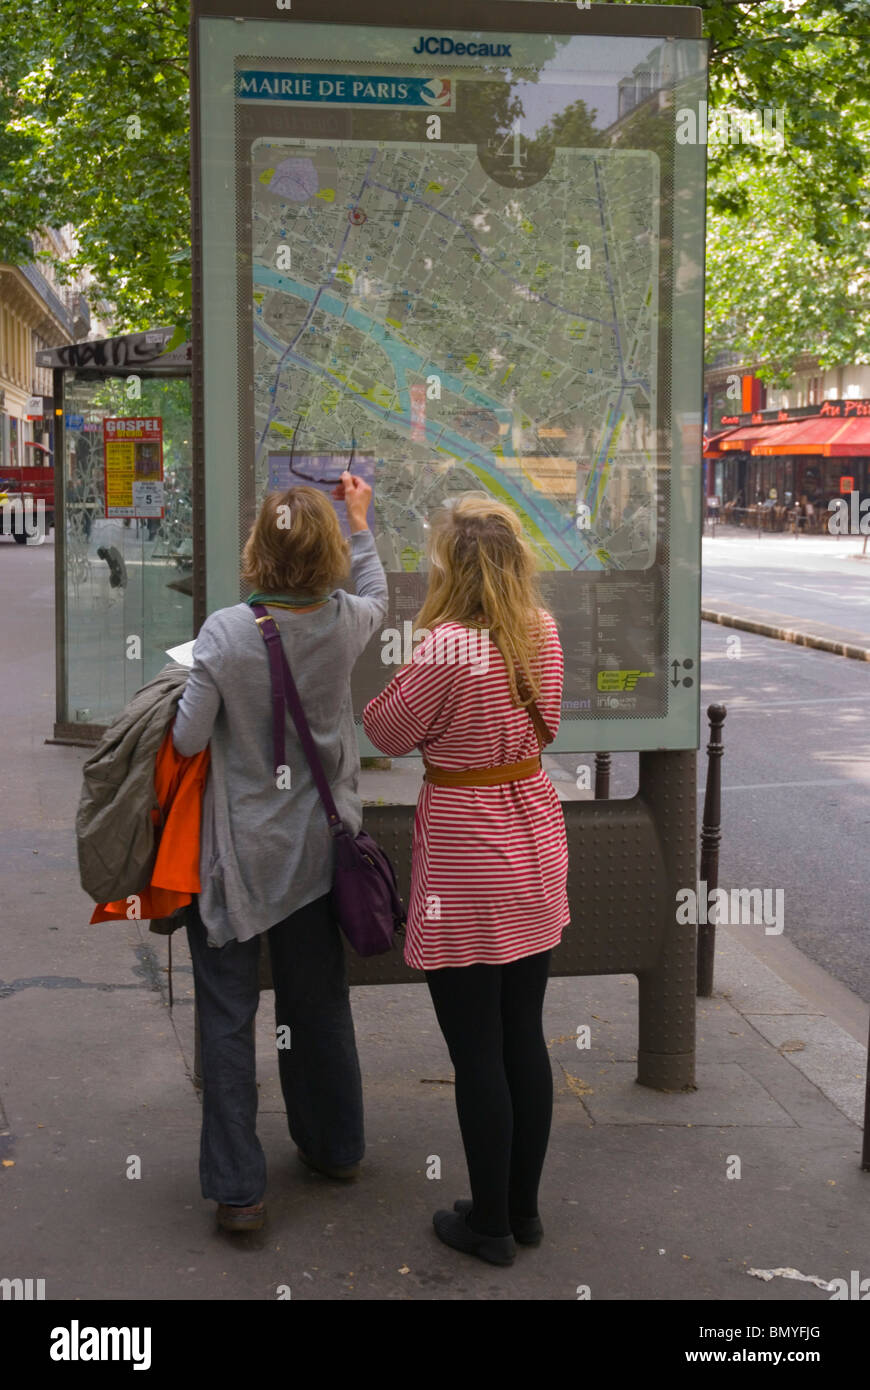 Frauen auf der Suche auf Karte Boulevard de Sebastopol, Bezirk Le Halles Paris Frankreich Mitteleuropa Stockfoto